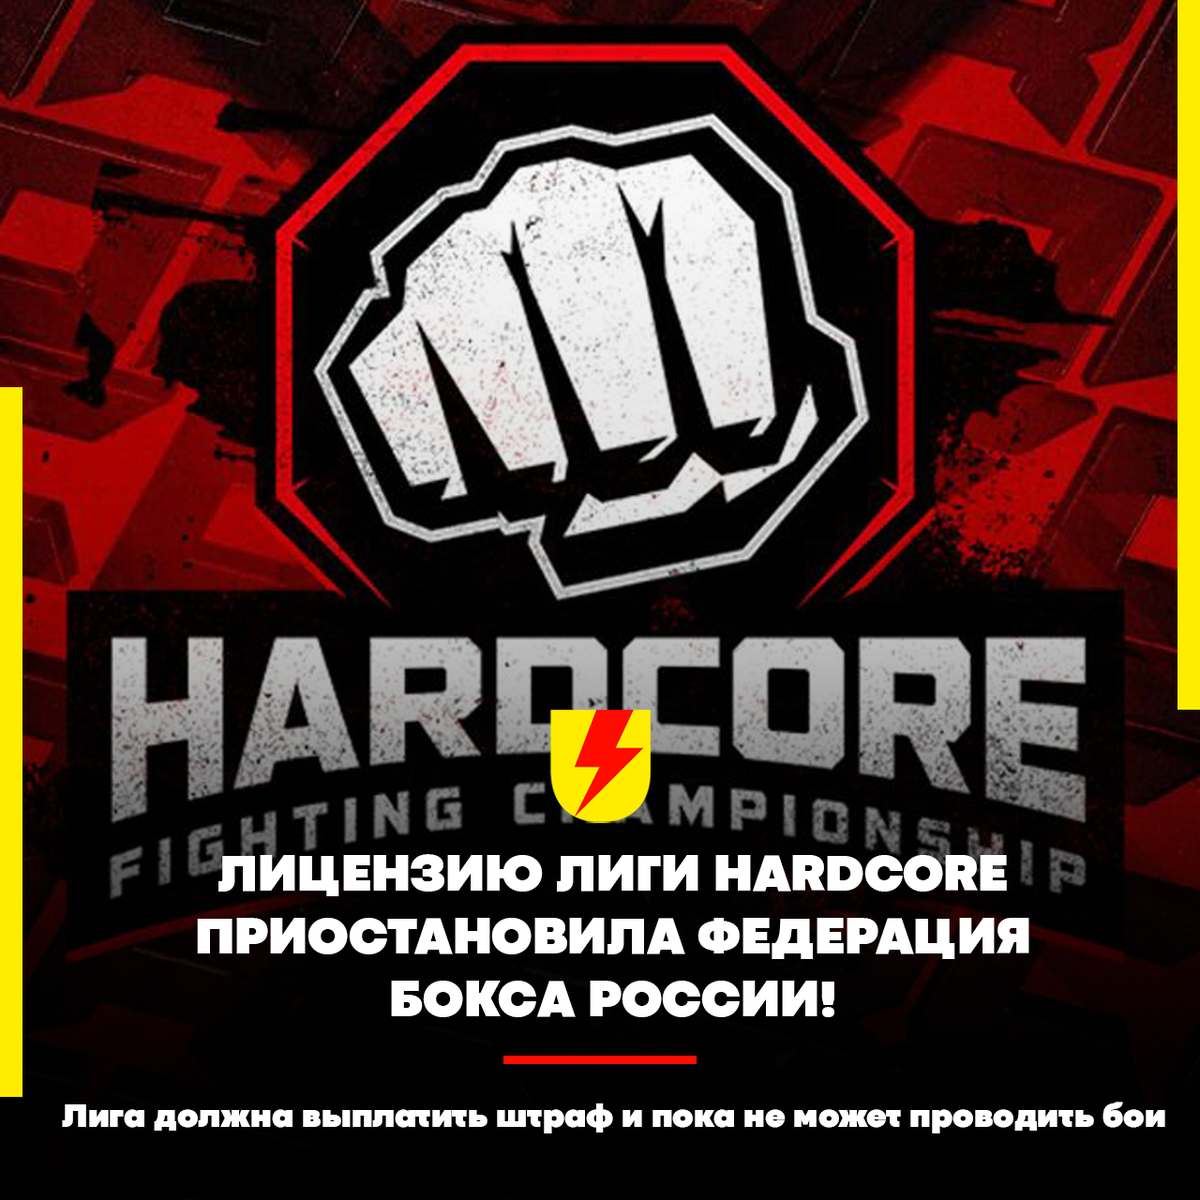   ❌ Что это значит? Прямо сейчас, Hardcore не сможет проводить официальные поединки под эгидой Федерации, а это профессиональный бокс и кулачные бои.